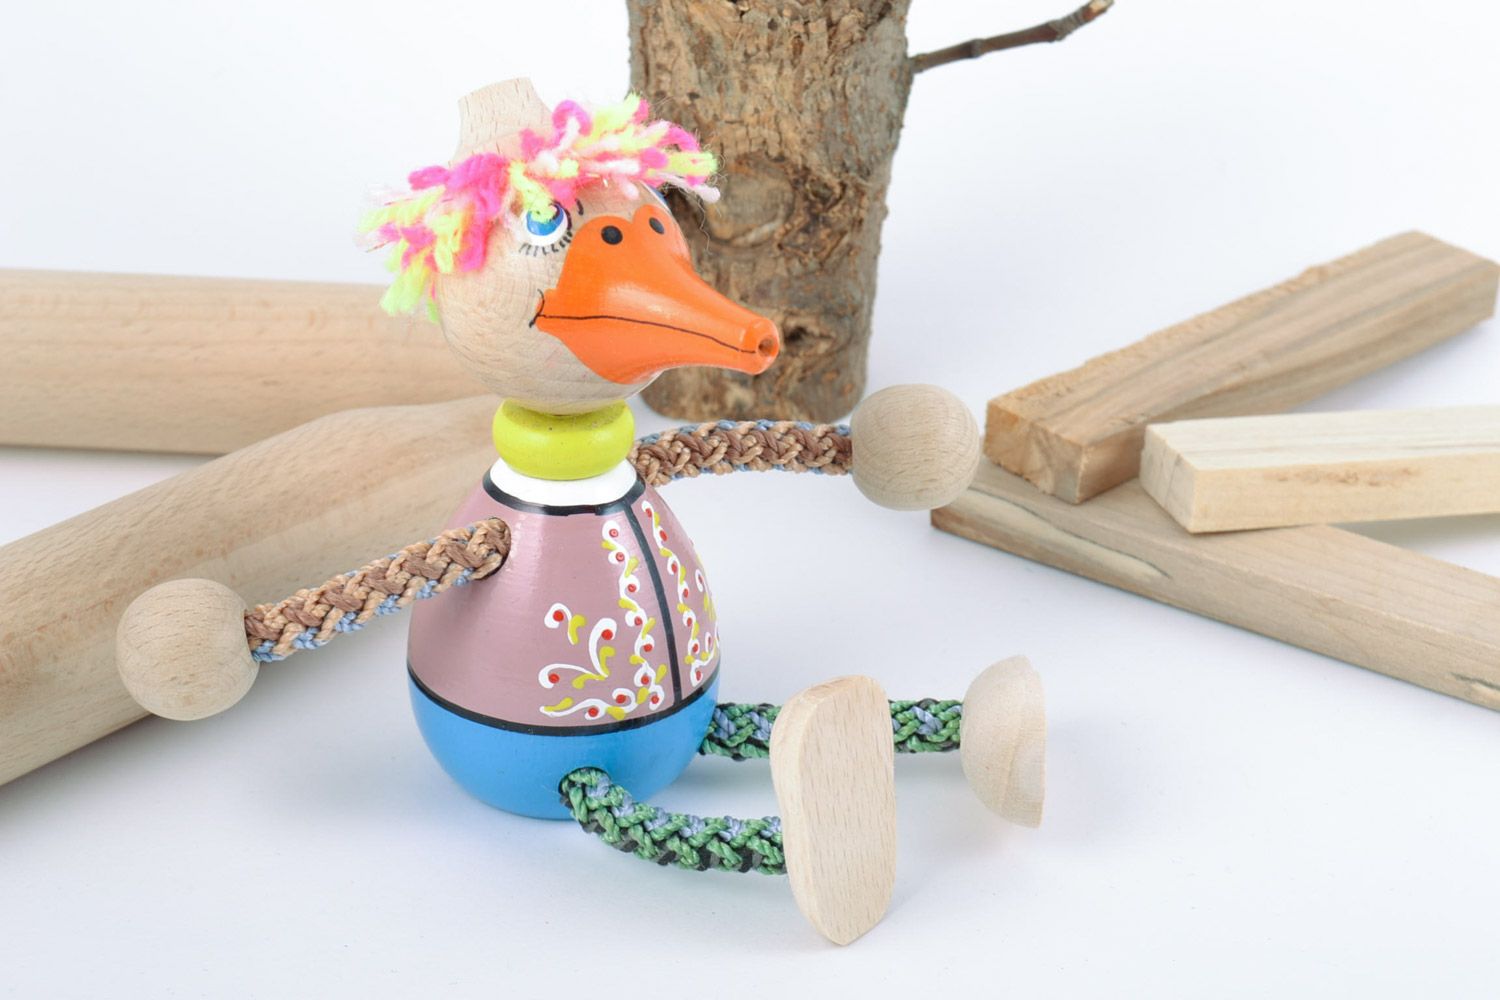 Красочная деревянная игрушка в виде утки ручной работы расписанная эко красками фото 1